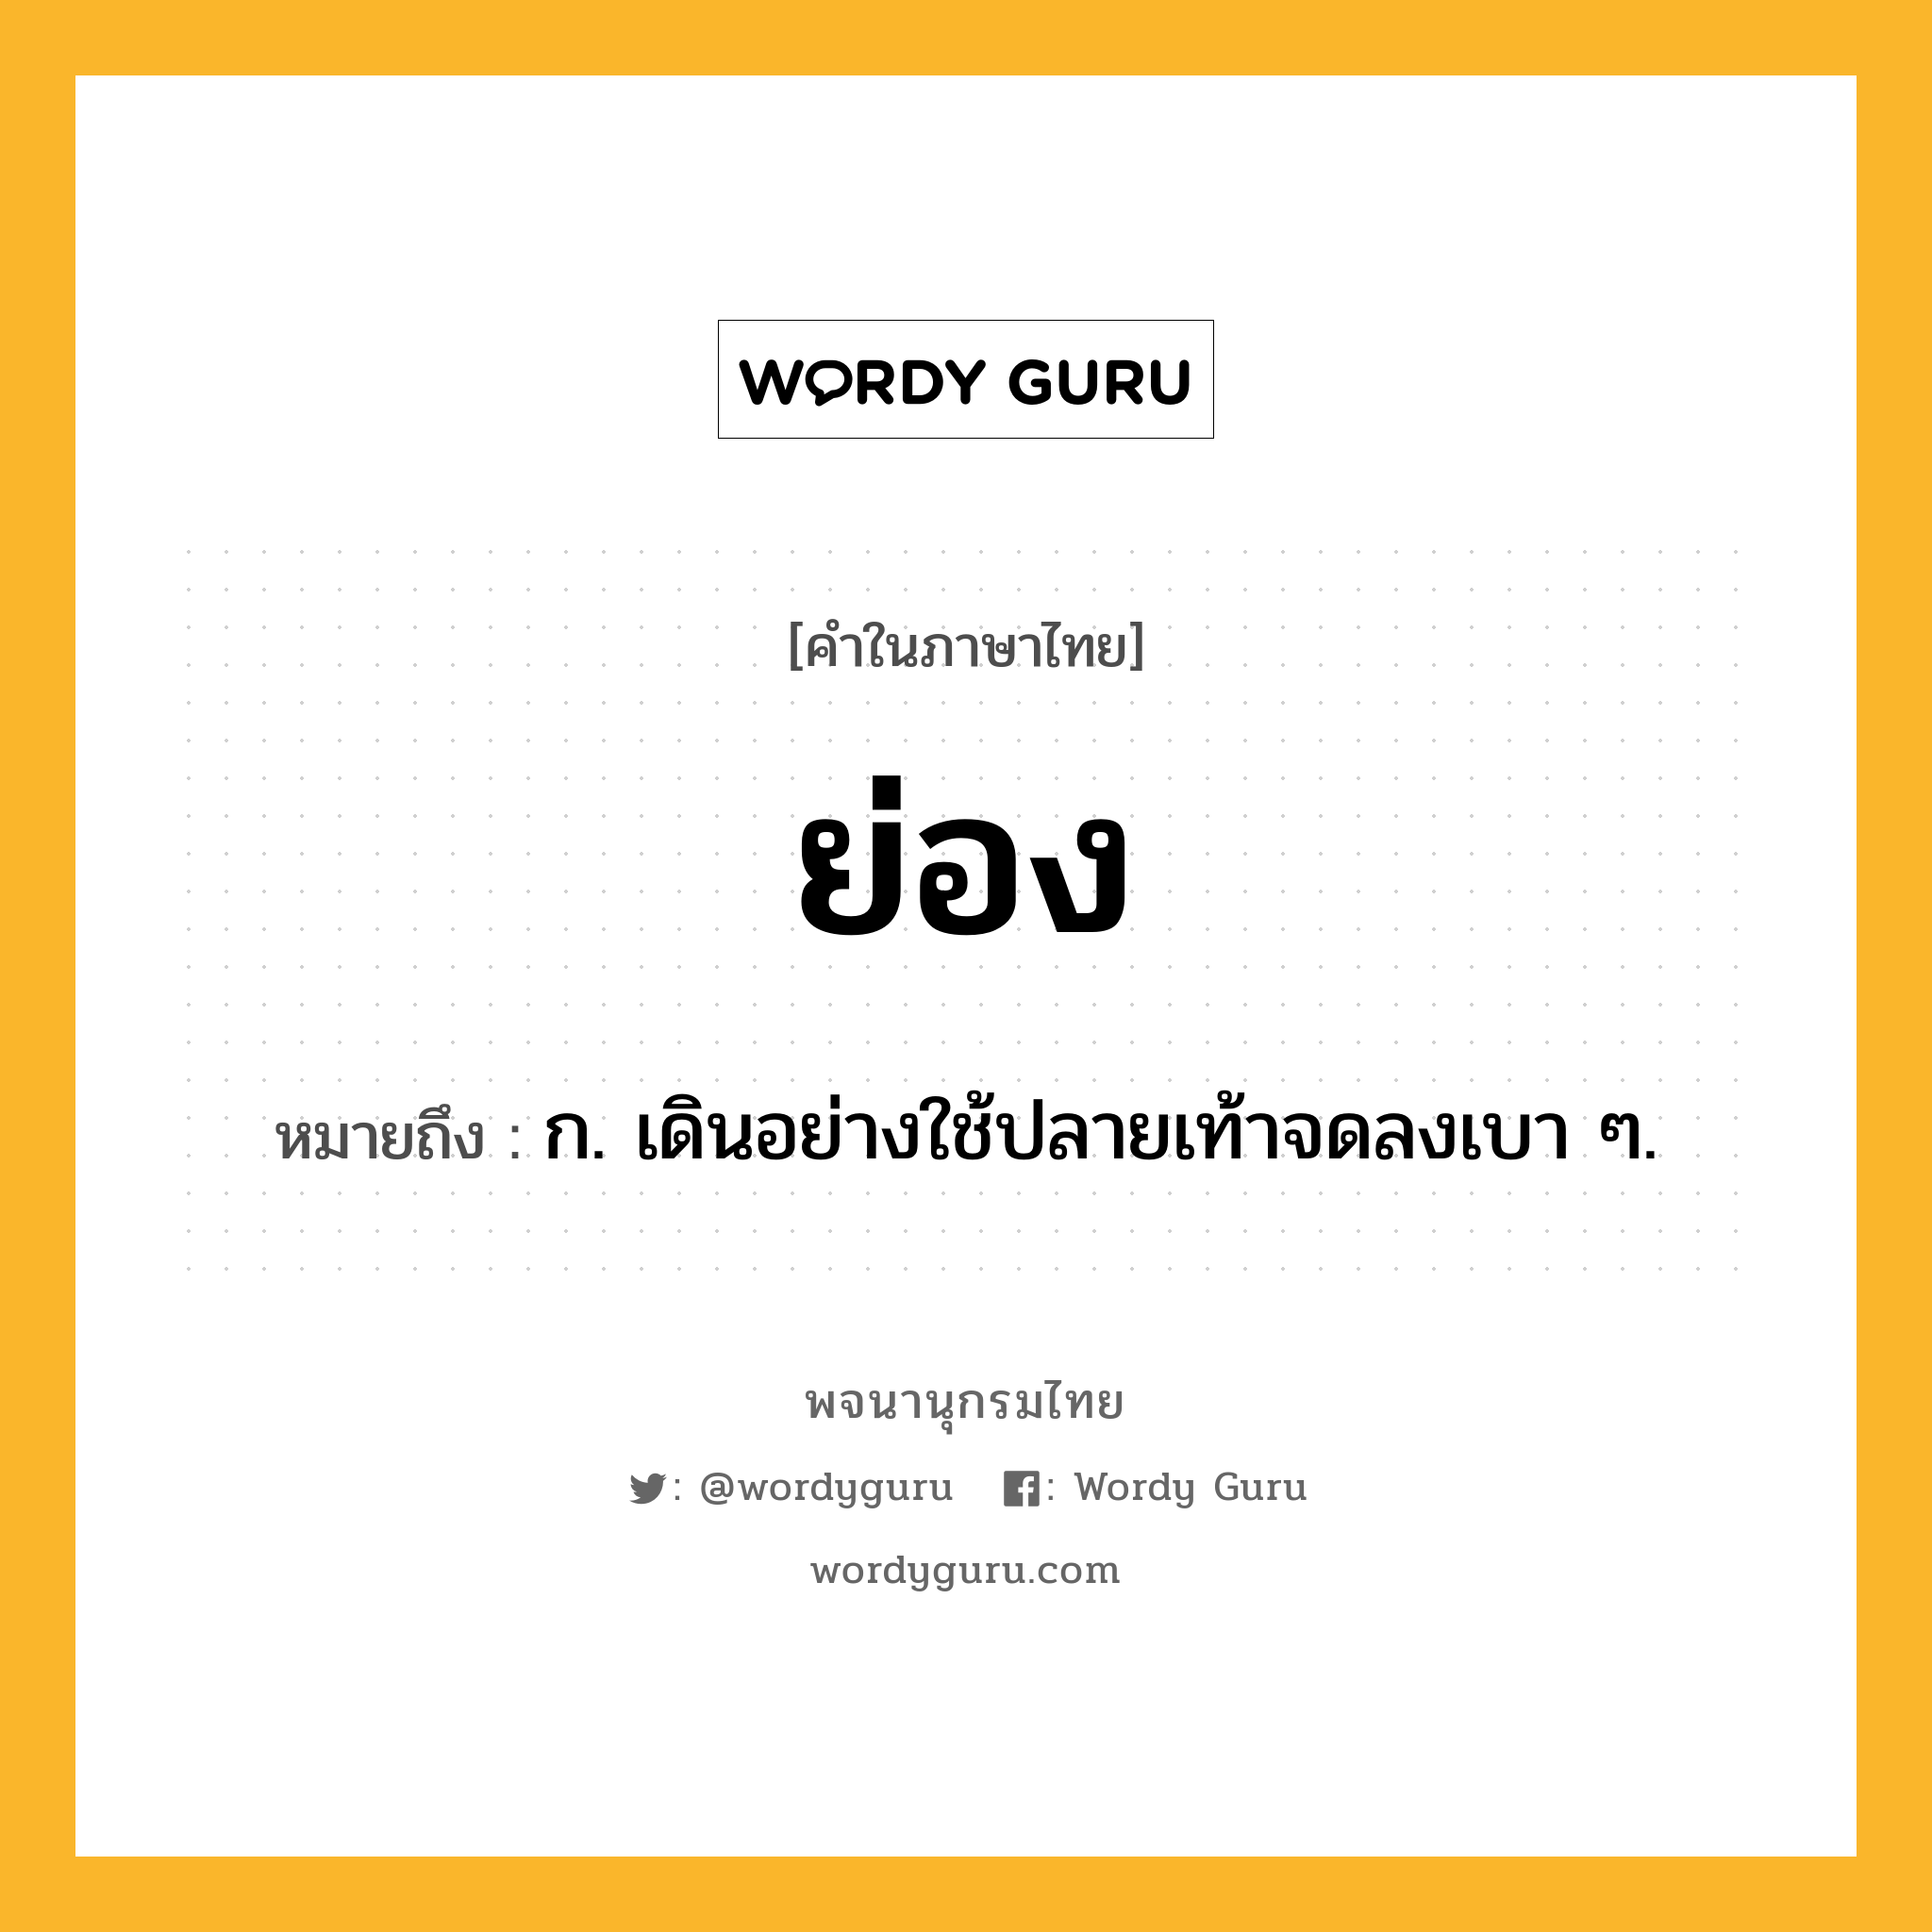 ย่อง ความหมาย หมายถึงอะไร?, คำในภาษาไทย ย่อง หมายถึง ก. เดินอย่างใช้ปลายเท้าจดลงเบา ๆ.